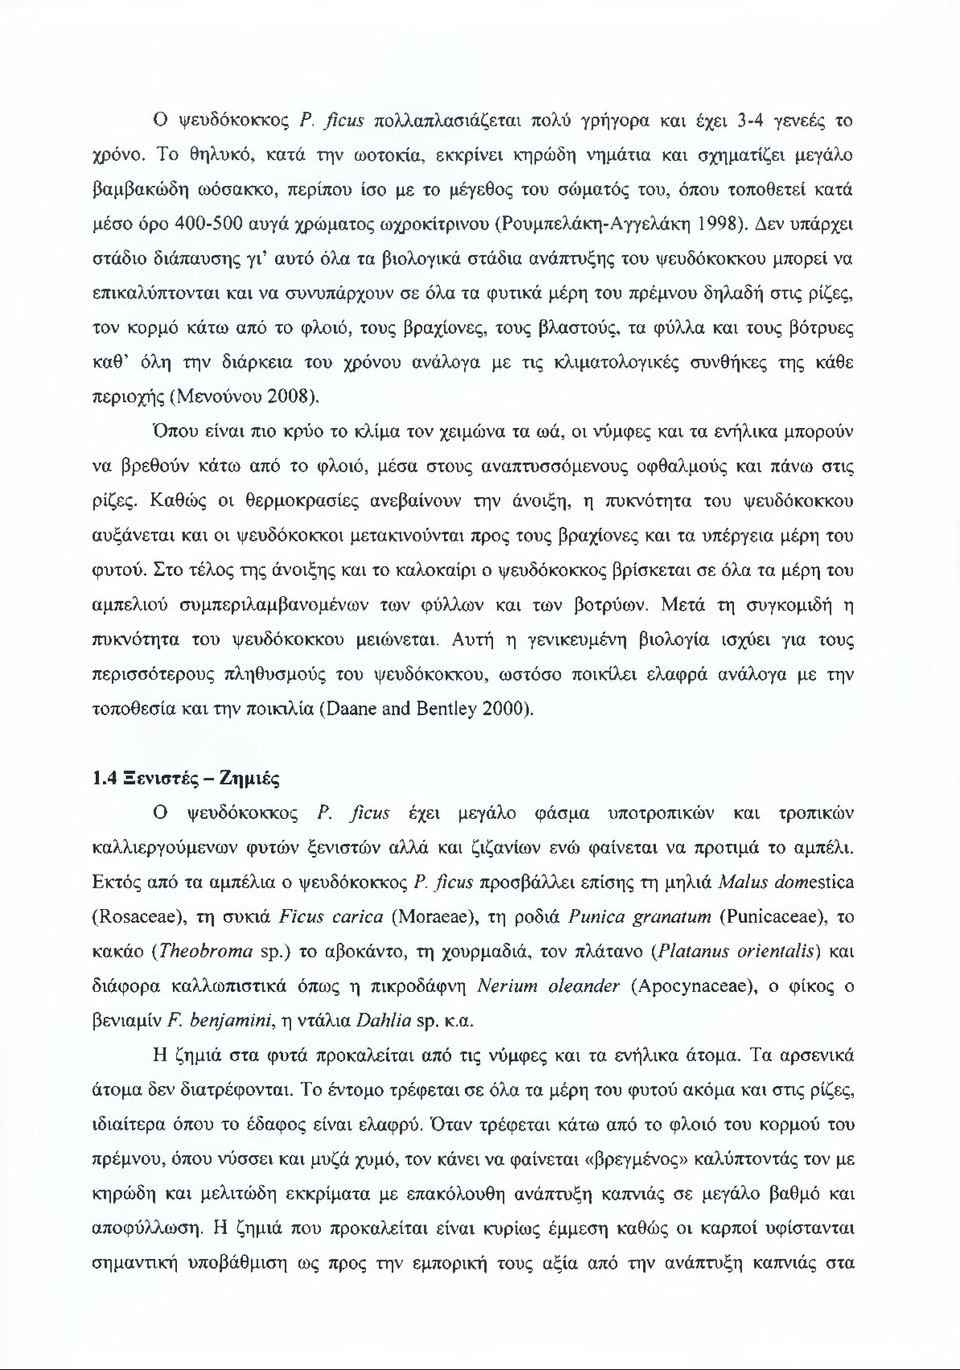 ωχροκίτρινου (Ρουμπελάκη-Αγγελάκη 1998).